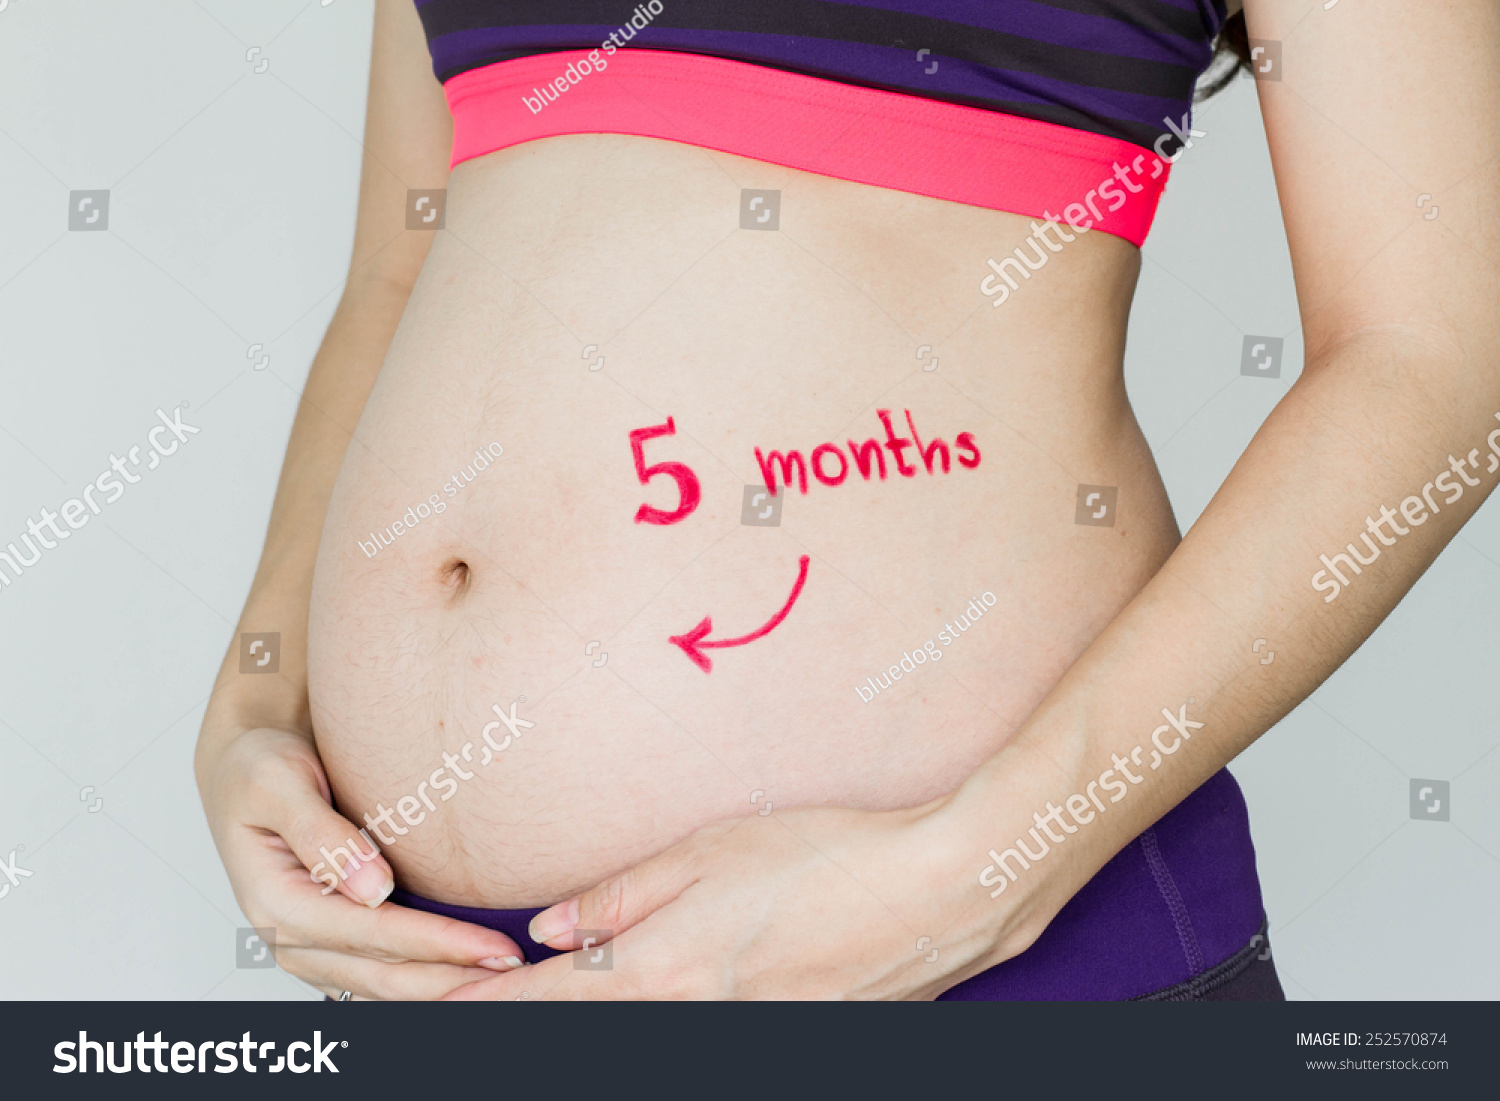 грудь и живот в первый месяц беременности фото 43